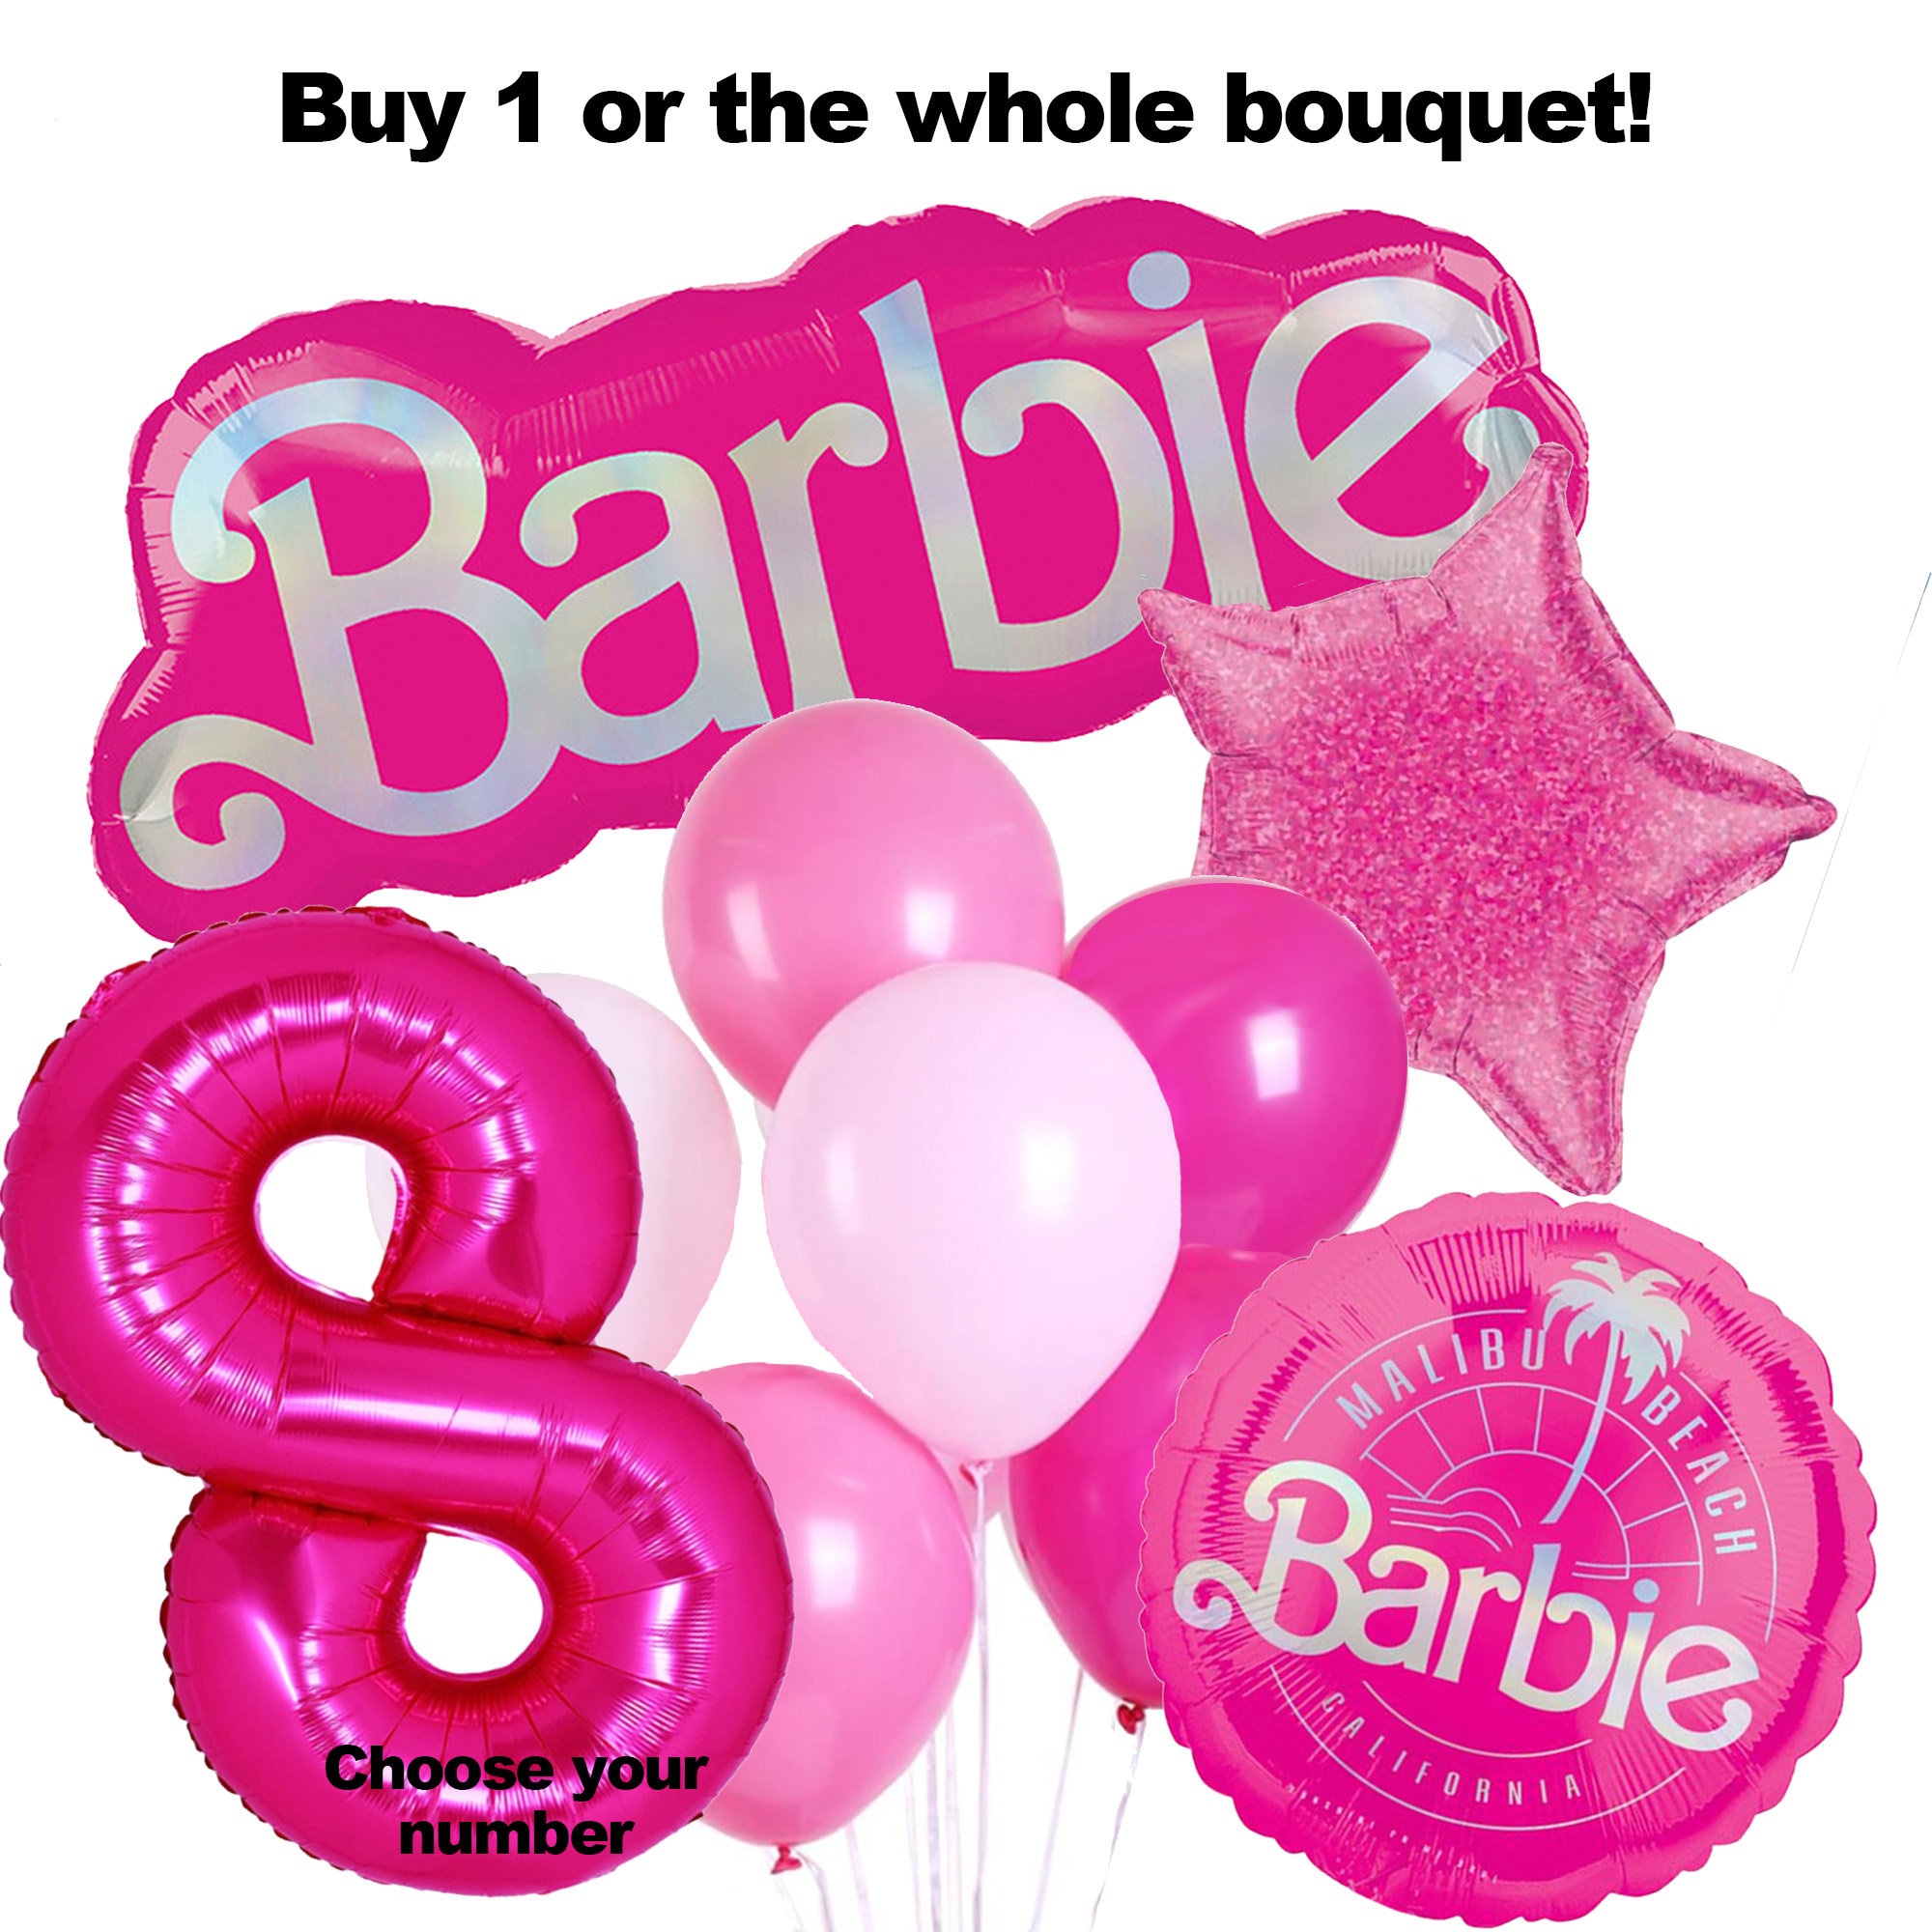 palloncini compleanno barbie